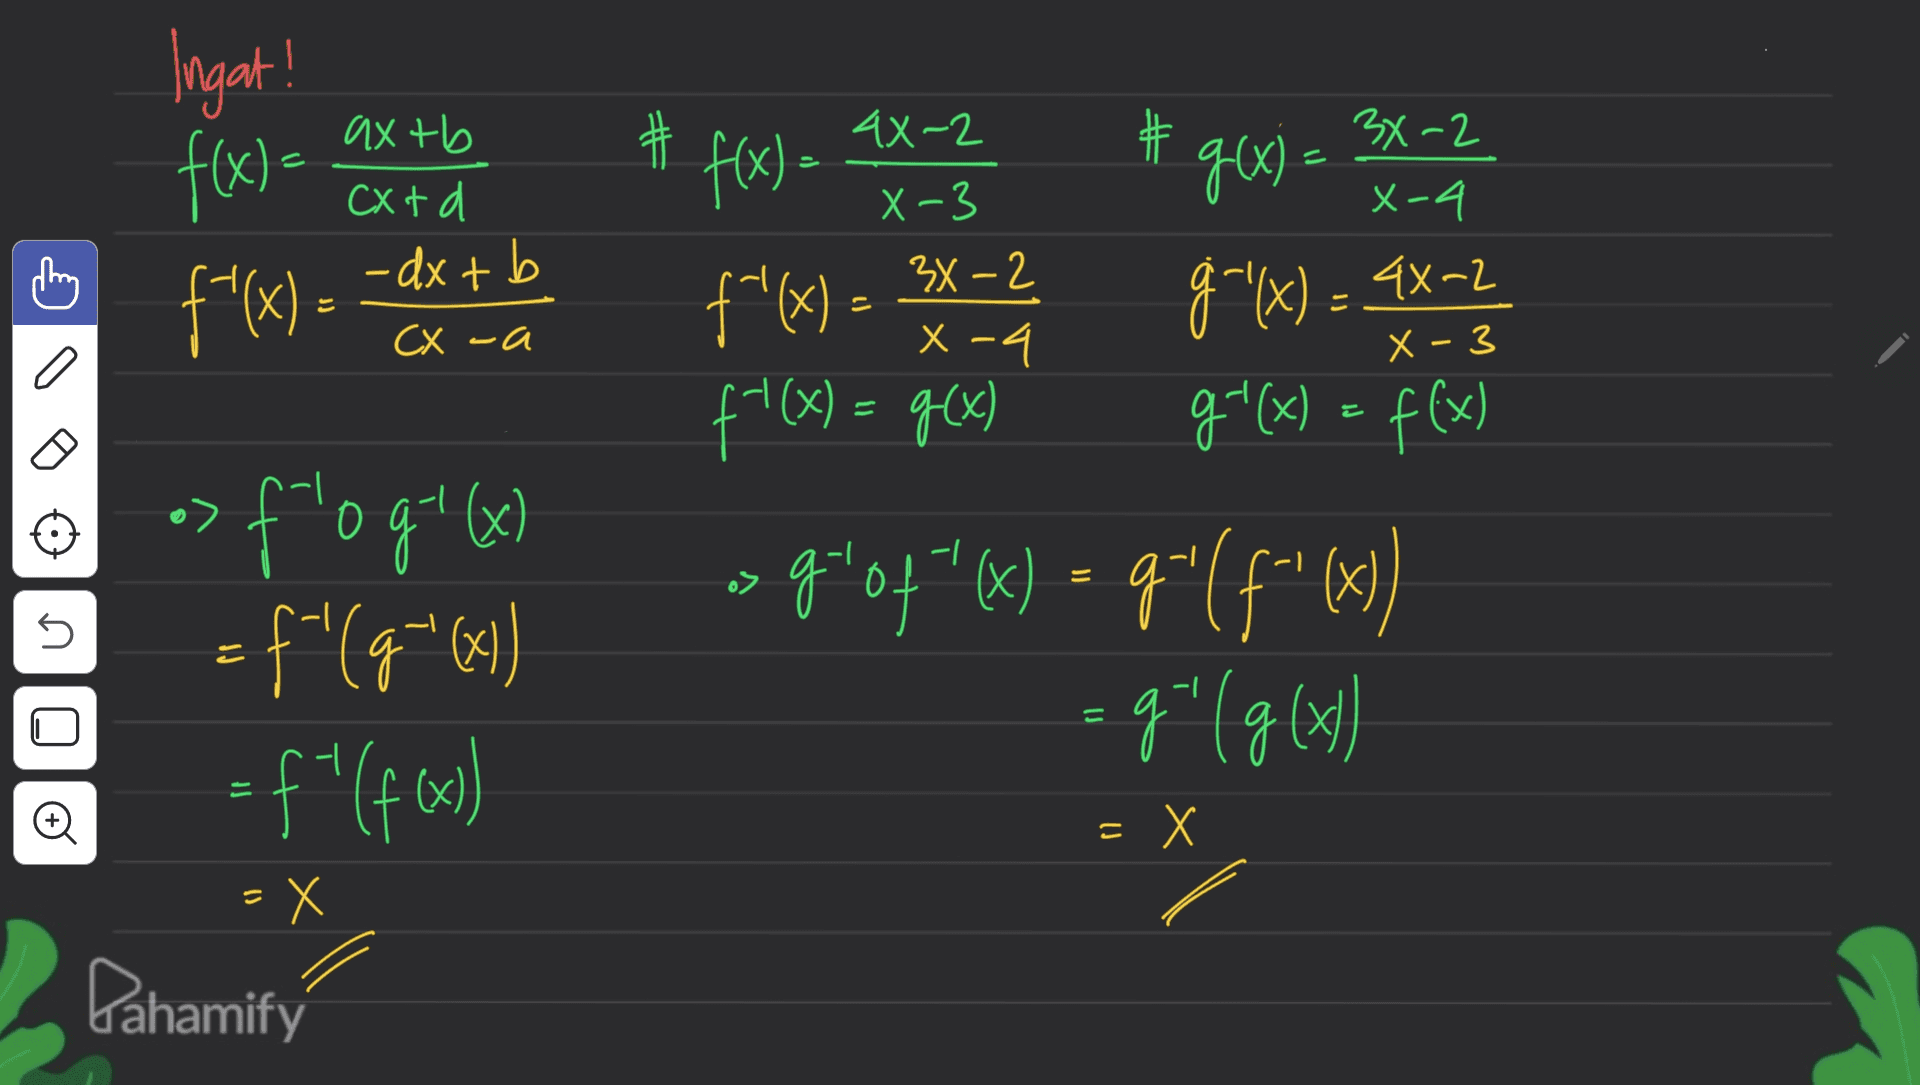 Ingat! # # # f(x) = ax til goal = 3x - 2 2 4 axtb CX td - dx + b CX -a 2 f'(x) =2 3 a f(x) = ax -23 f (x) f*(x) = 3x - 2 g (x) = xx - 2 ( f'(x) = g(x) g'(x) = f(x) > 9404*(x) = 9"(f"() "X ) > -| ex f'ogok) = f'(g="641) o7 s s (4) b), b= = (1927).- 5 = Đ =X Х X - Dahamify 